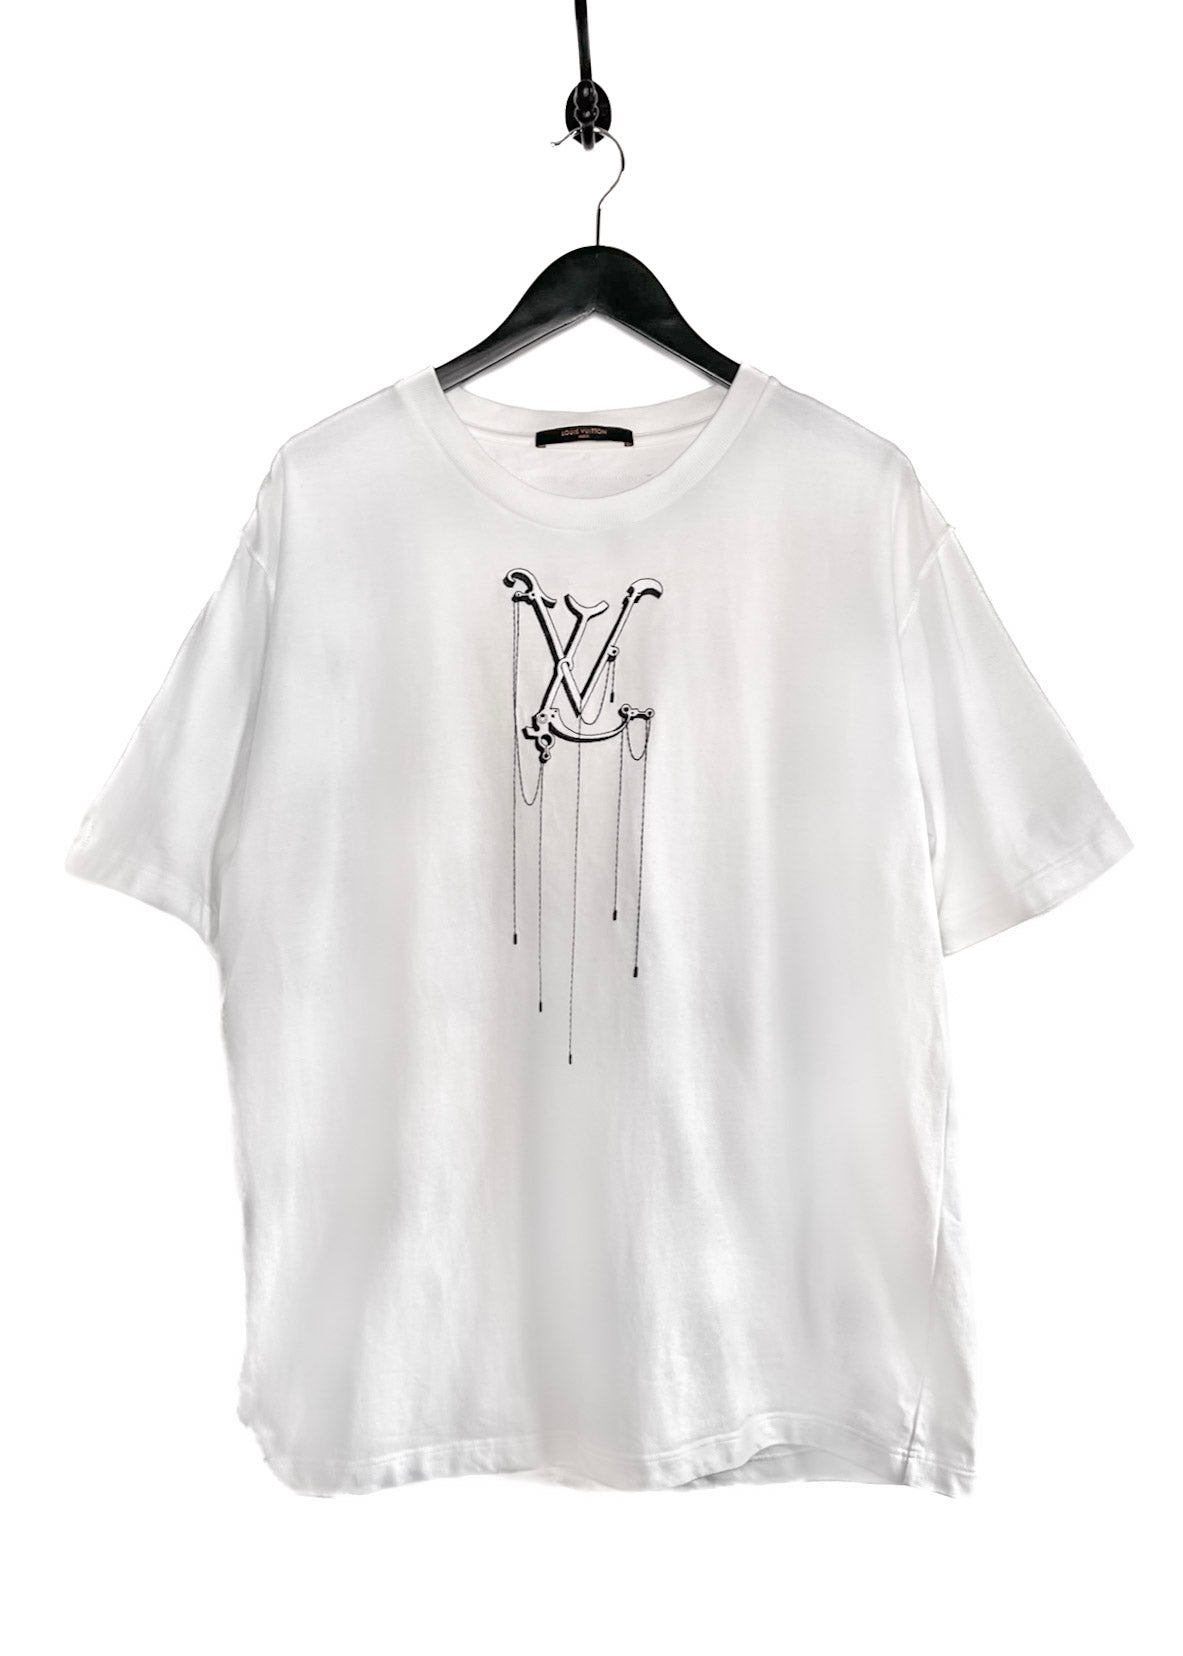 Louis Vuitton White Cotton LV Pendant Crew Neck Short Sleeve T